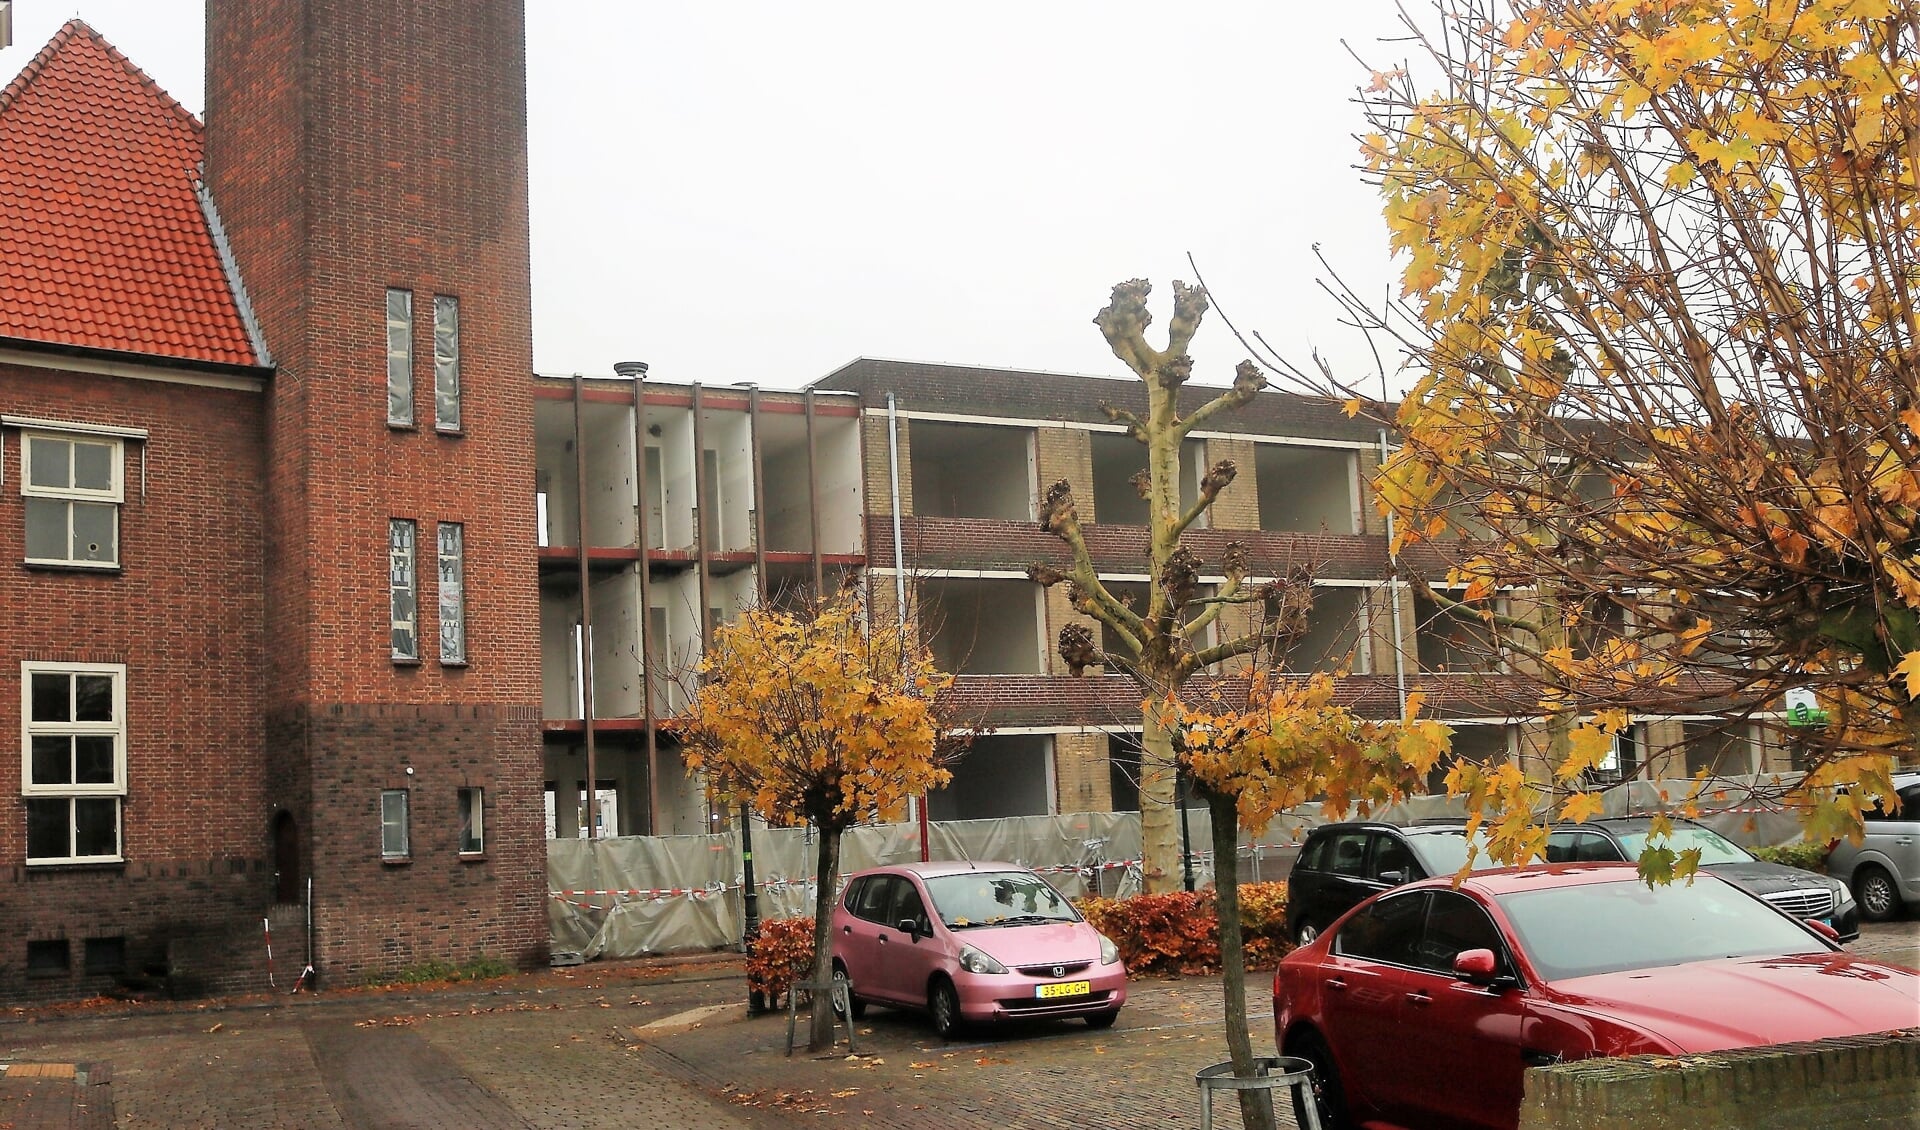 In de Brugstraat in Grave worden de appartementen van het oorspronkelijke ‘zorgcentrum Maaszicht’ na april gesloopt. Alles ‘onder de rode pannen’ blijft behouden. (foto en tekst: Annelies Graafsma)

